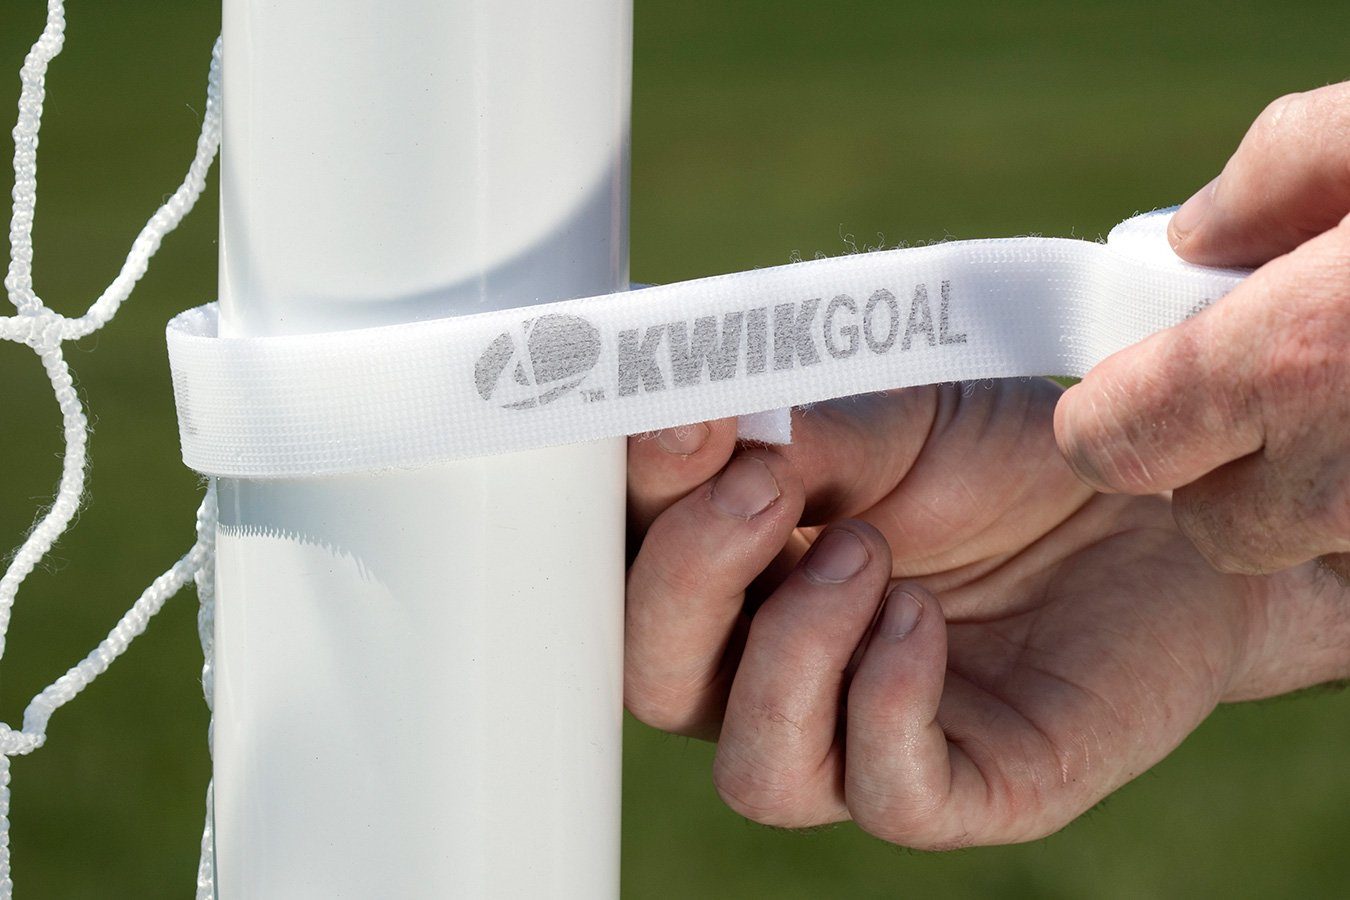 Kwikgoal Deluxe Net Fastener | 10B2701 Goal accessories Kwikgoal 